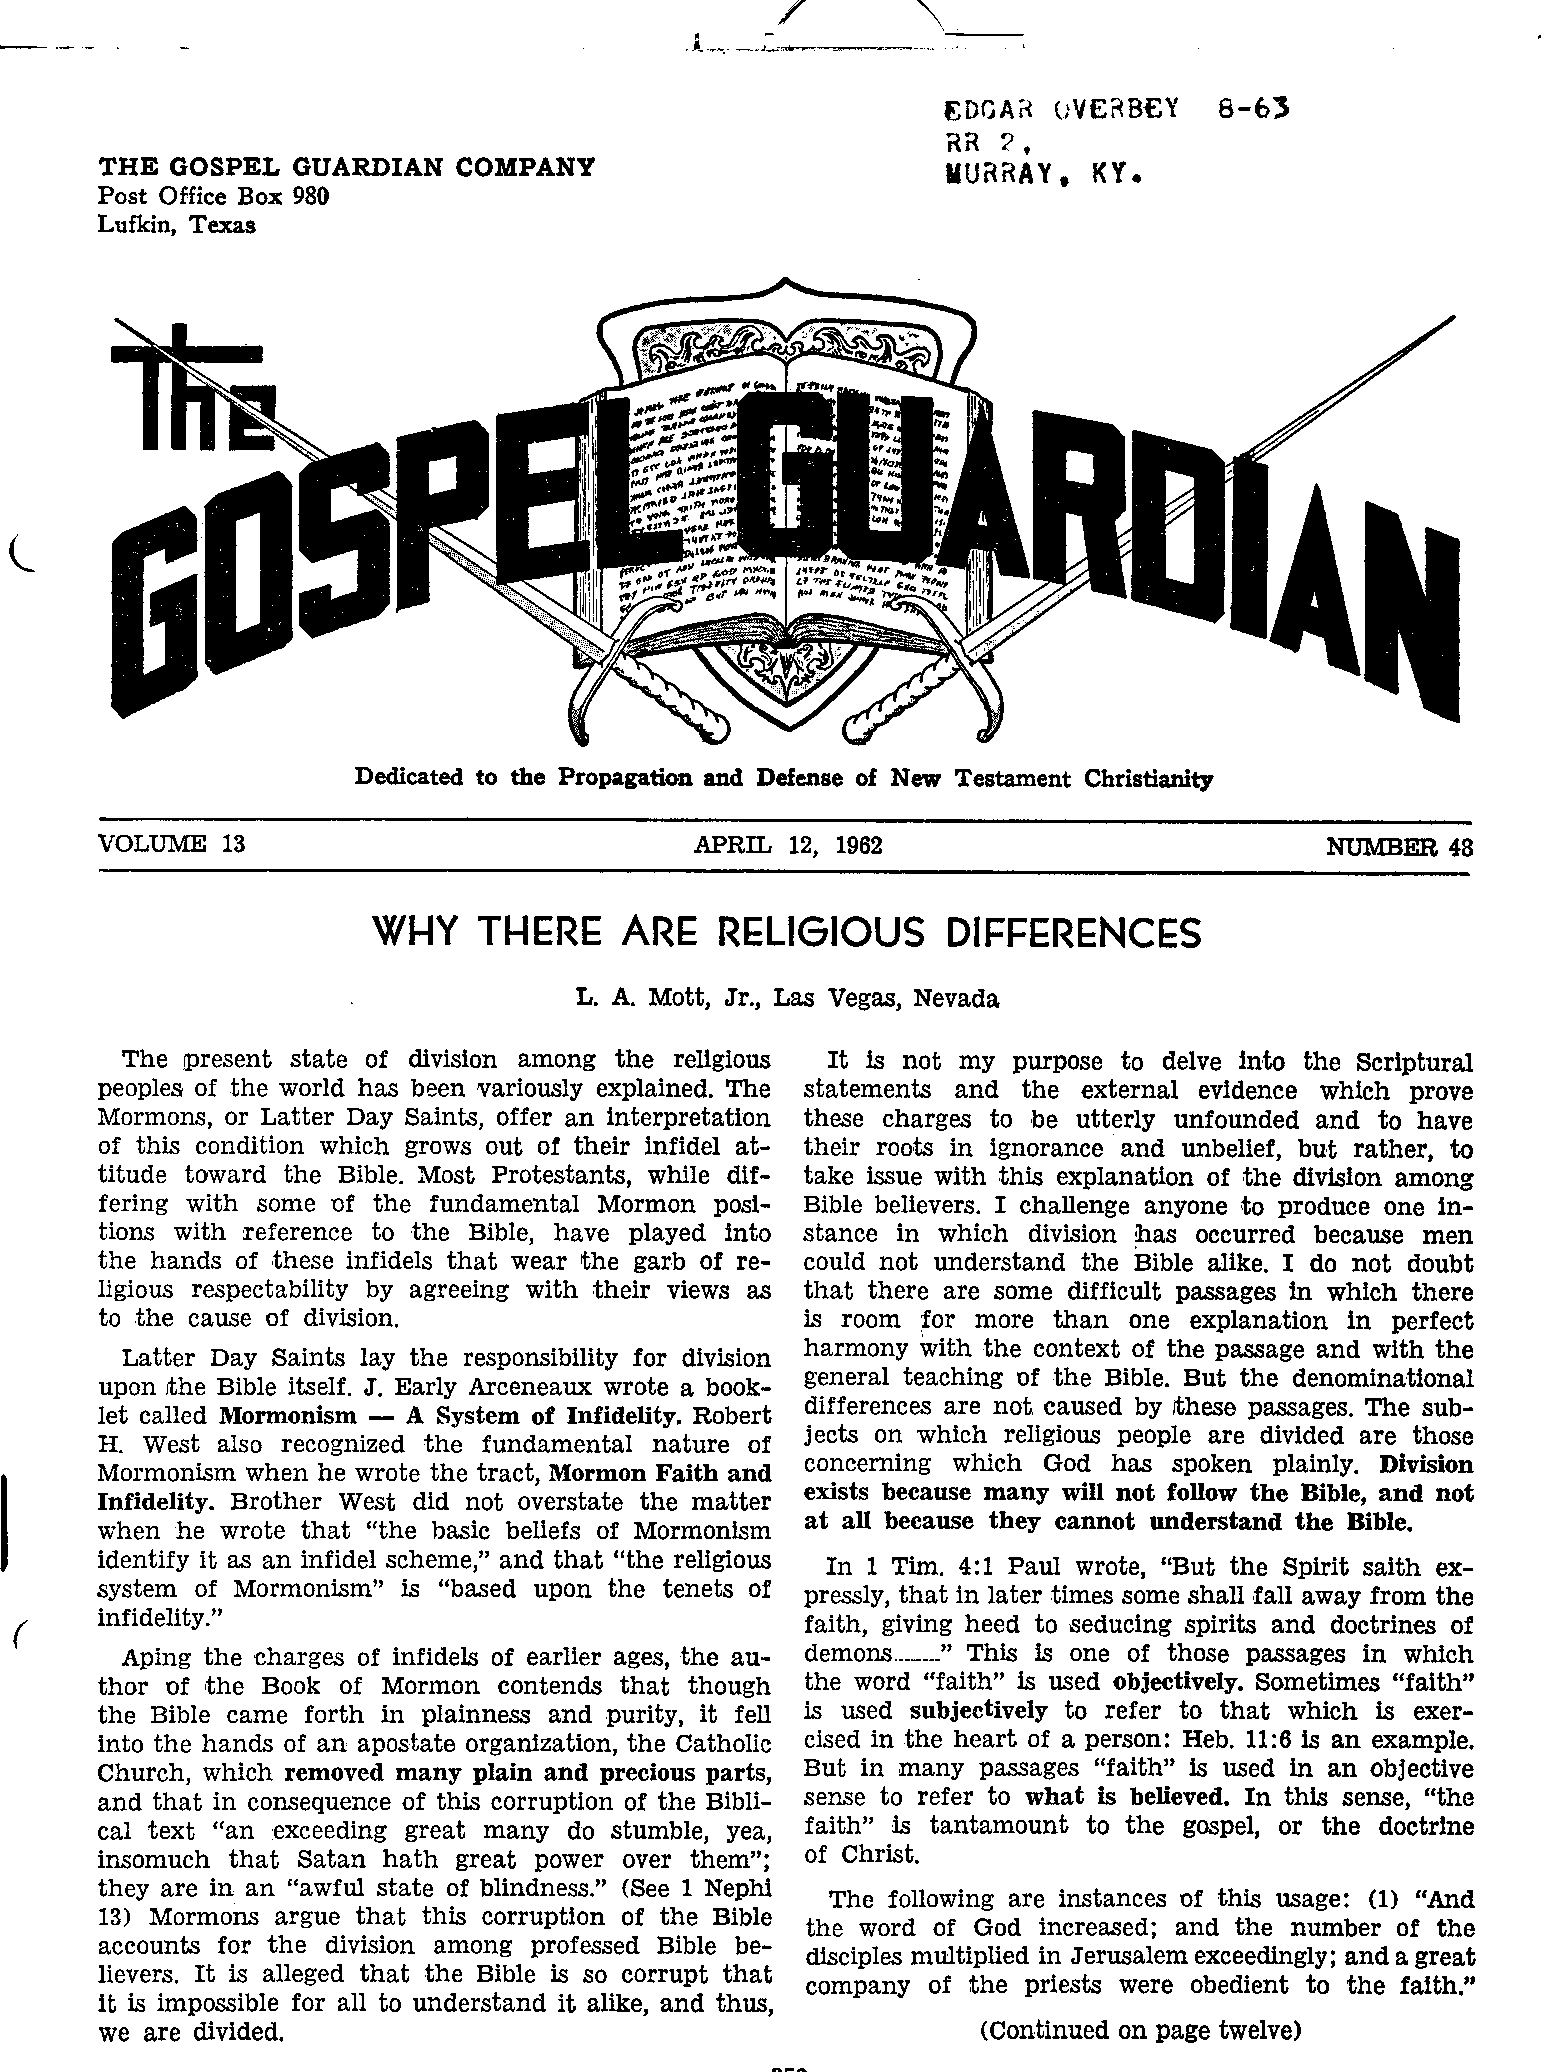 Gospel Guardian Original: Vol.13 No.48 Pg.1